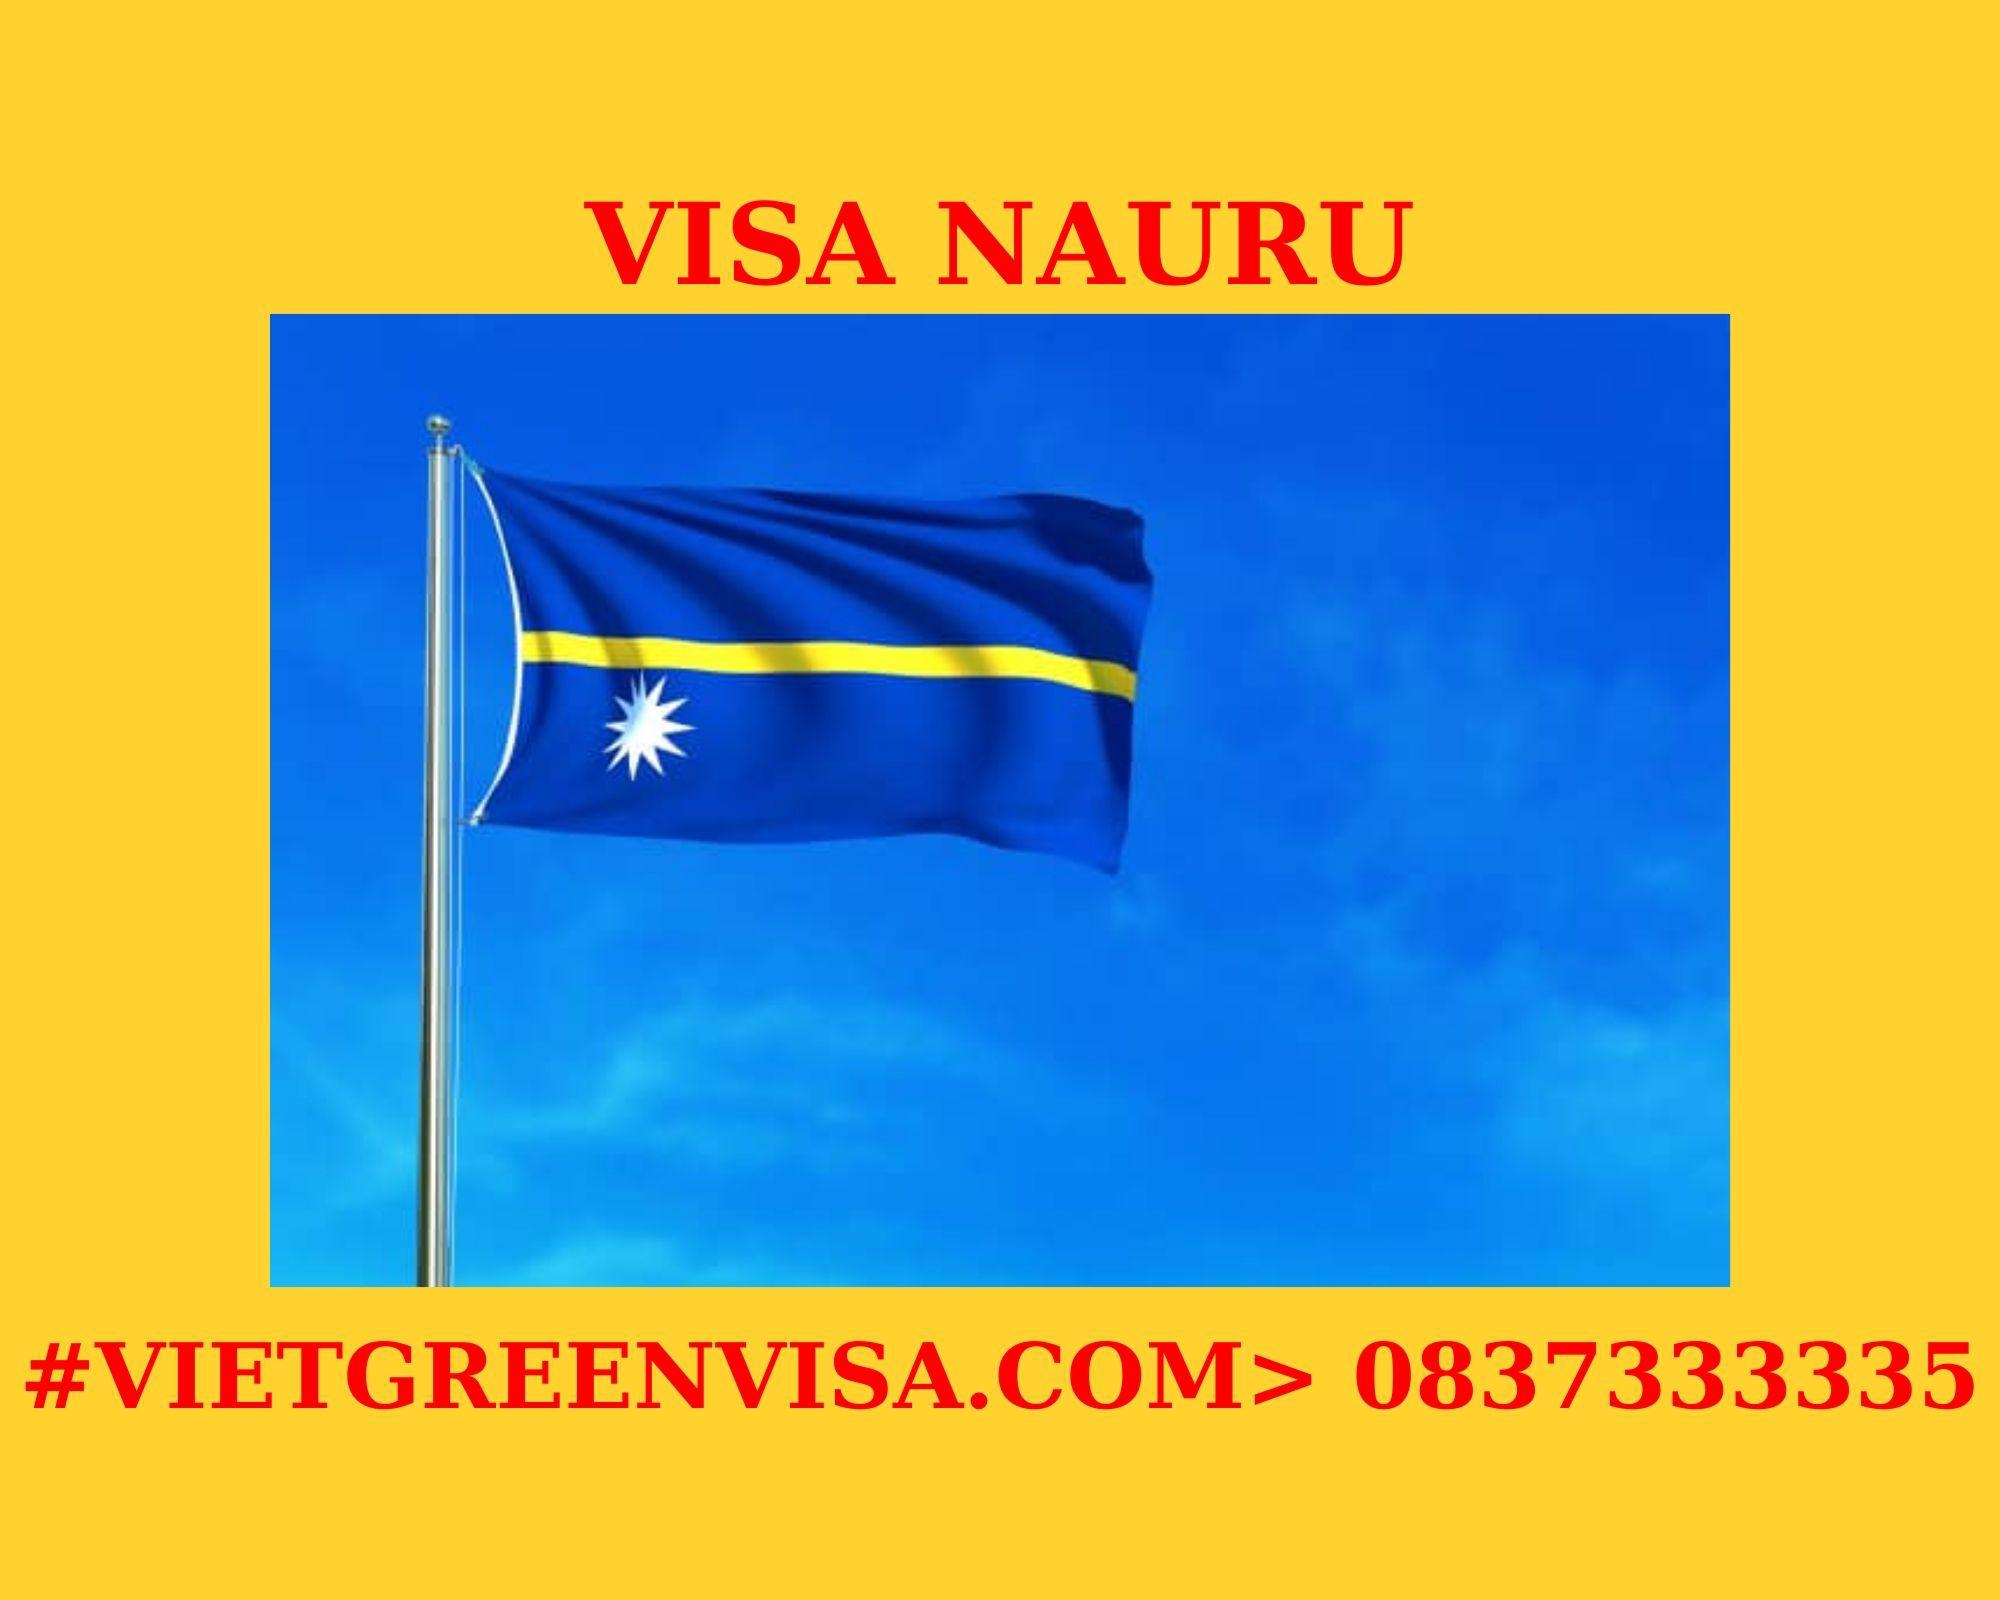 Xin Visa Nauru trọn gói tại Hà Nội, Hồ Chí Minh